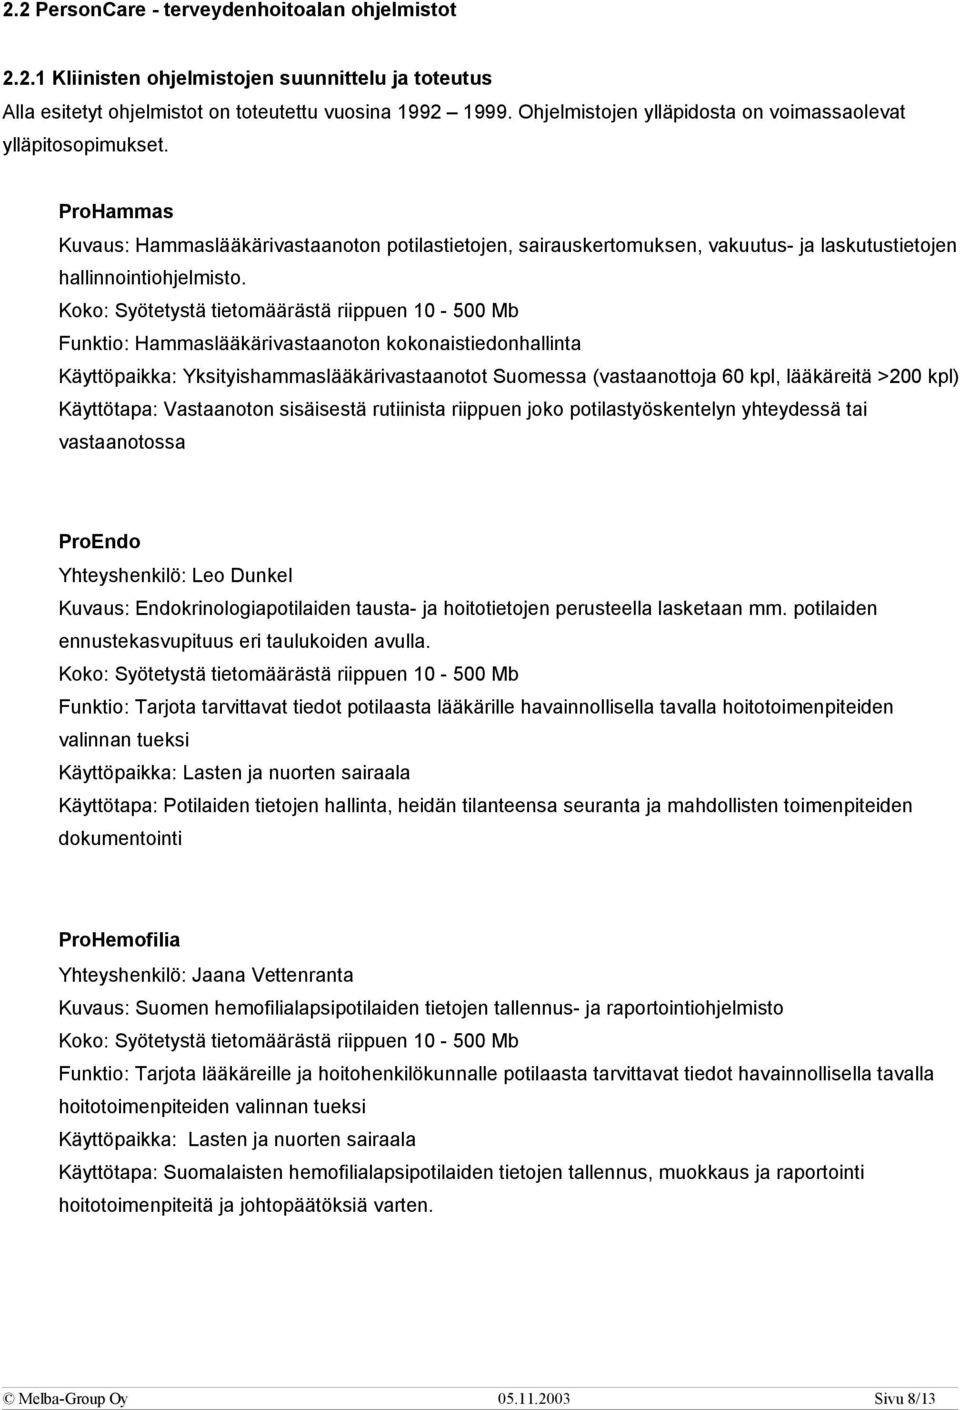 Koko: Syötetystä tietomäärästä riippuen 10-500 Mb Funktio: Hammaslääkärivastaanoton kokonaistiedonhallinta Käyttöpaikka: Yksityishammaslääkärivastaanotot Suomessa (vastaanottoja 60 kpl, lääkäreitä